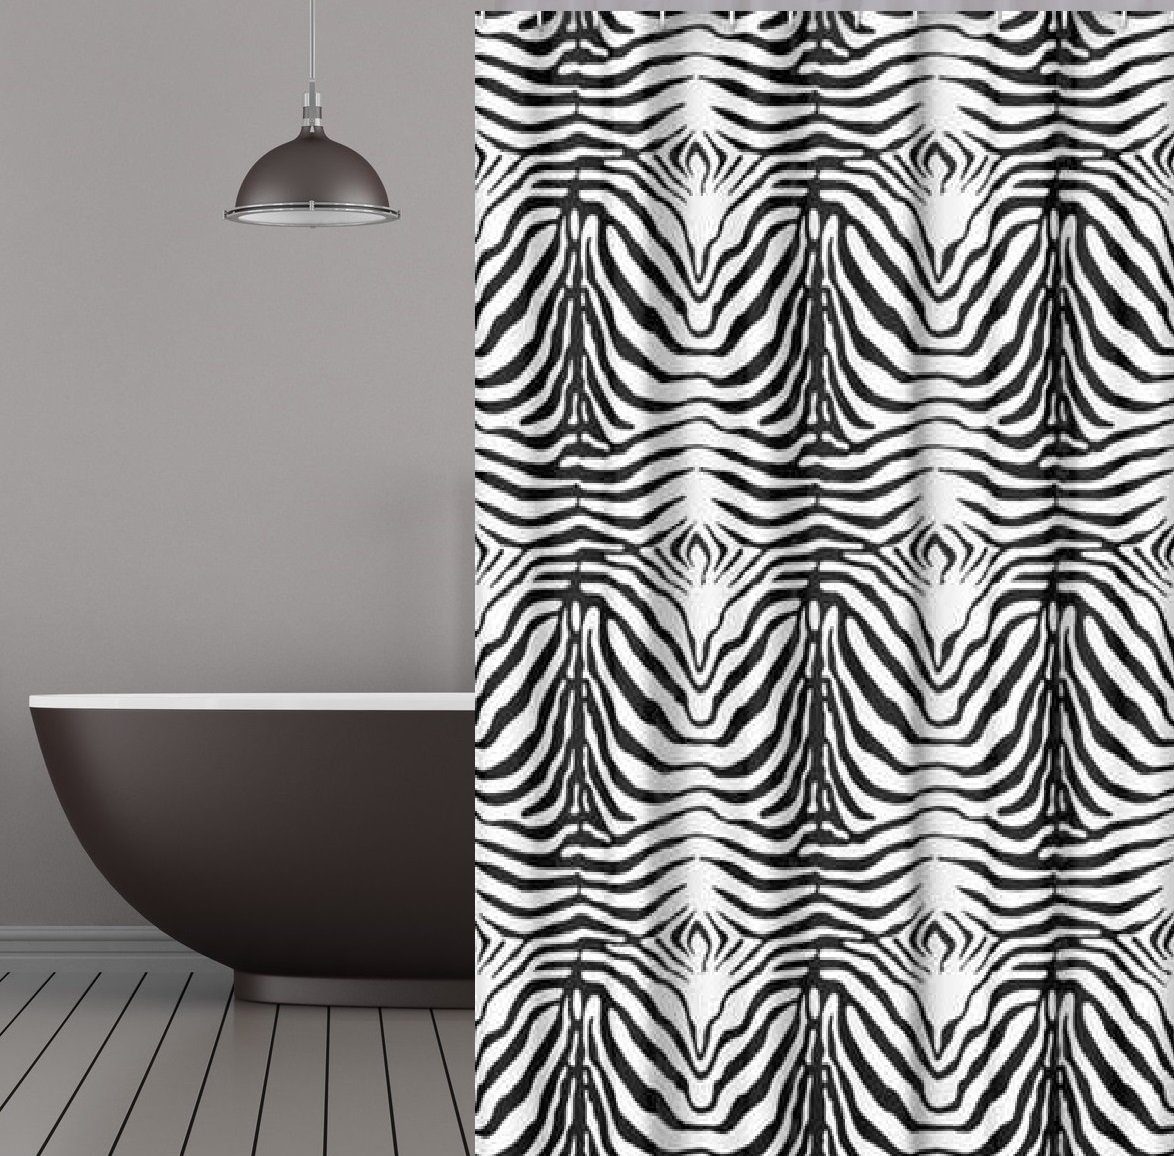 KS Handel 24 Duschvorhang Textil Duschvorhang 180x180 cm Zebra schwarz  weiss Breite 180 cm